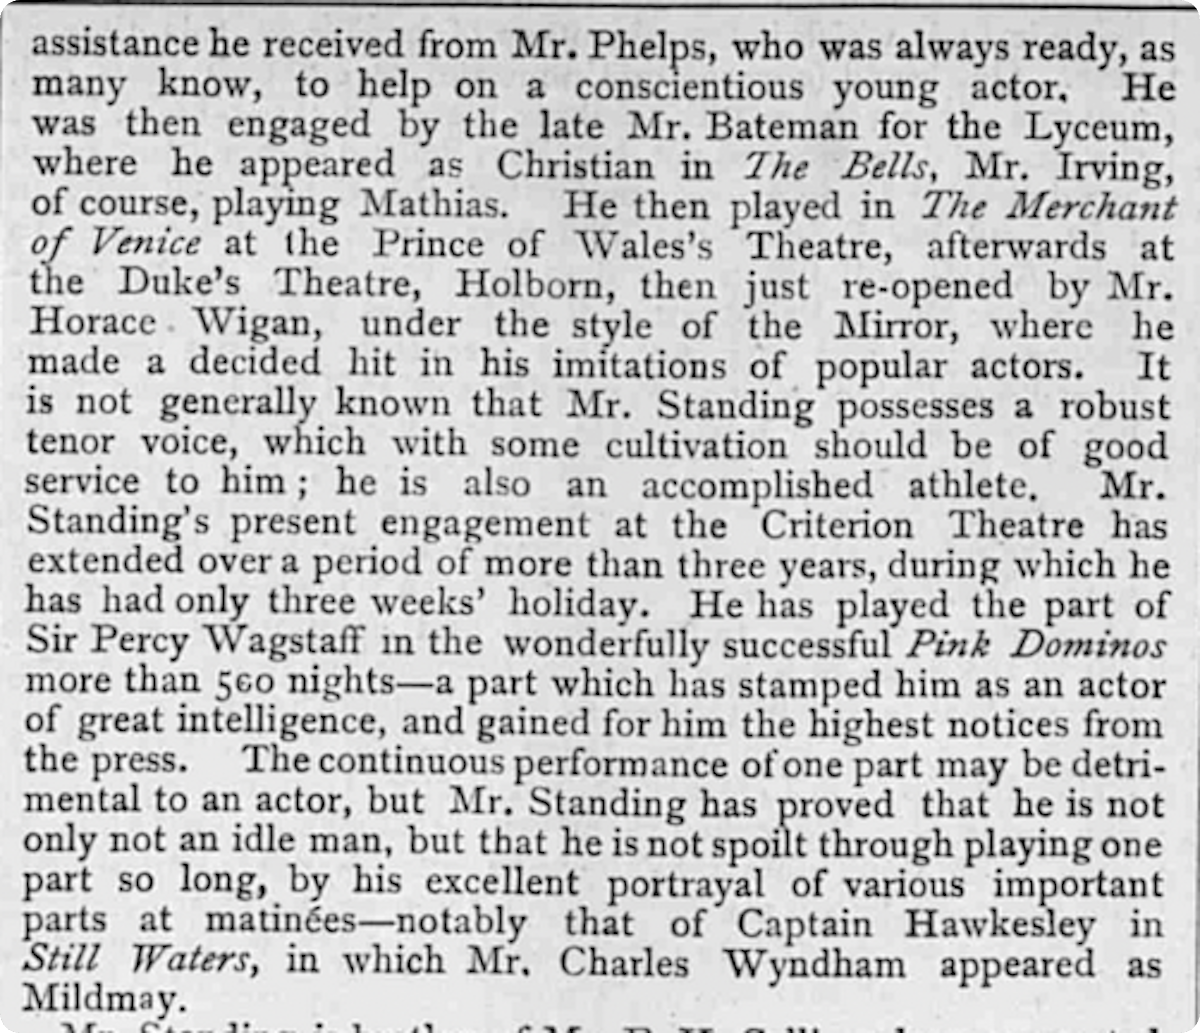 A newspaper extract describing Herbert Standing acting career